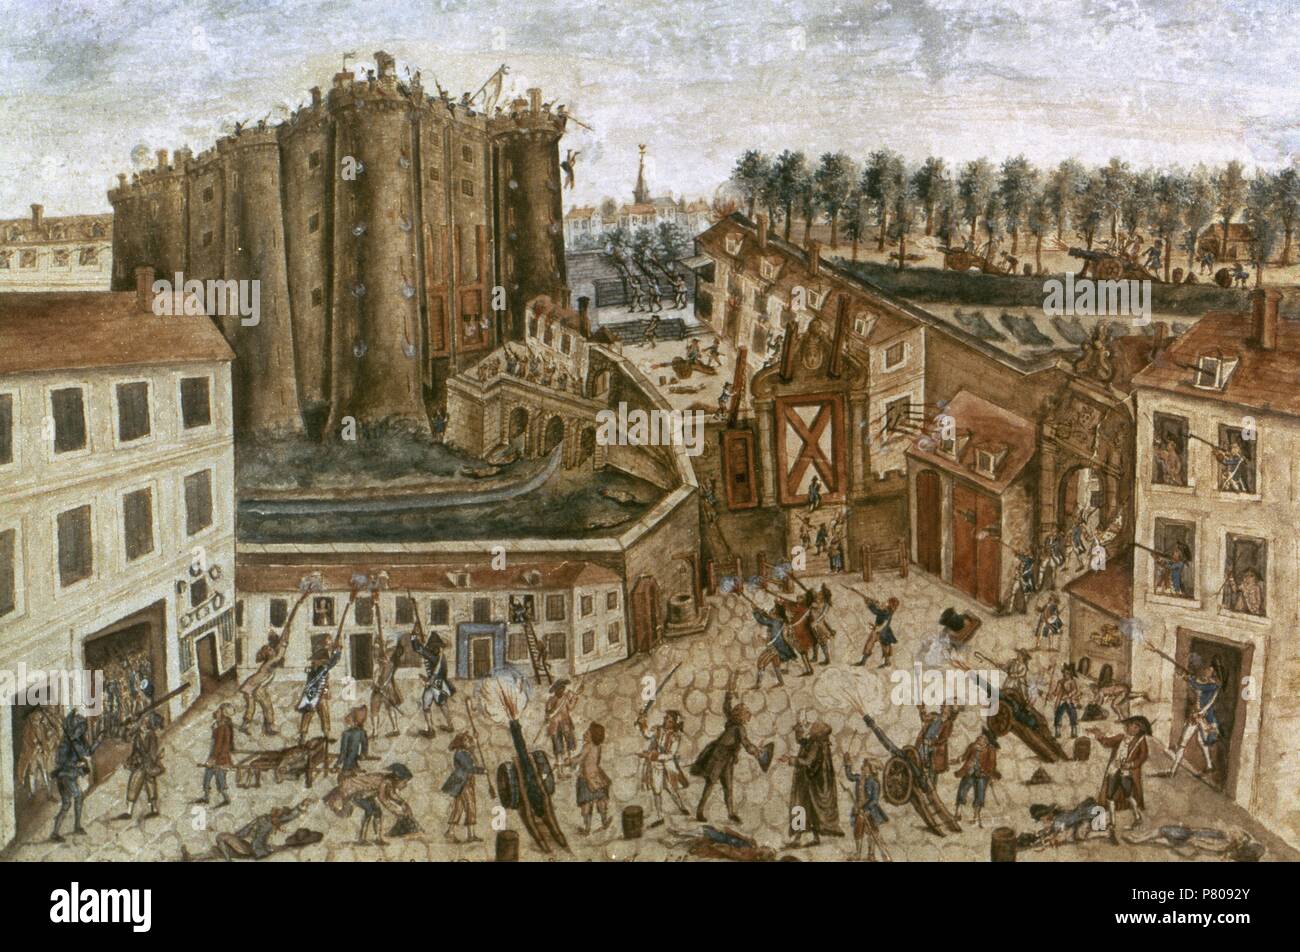 La Revolución Francesa. París. El asedio de la Bastilla. El 14 de julio de 1789. Por Claude Cholat Gauache. Museo Carnavalet. París. Francia. Foto de stock